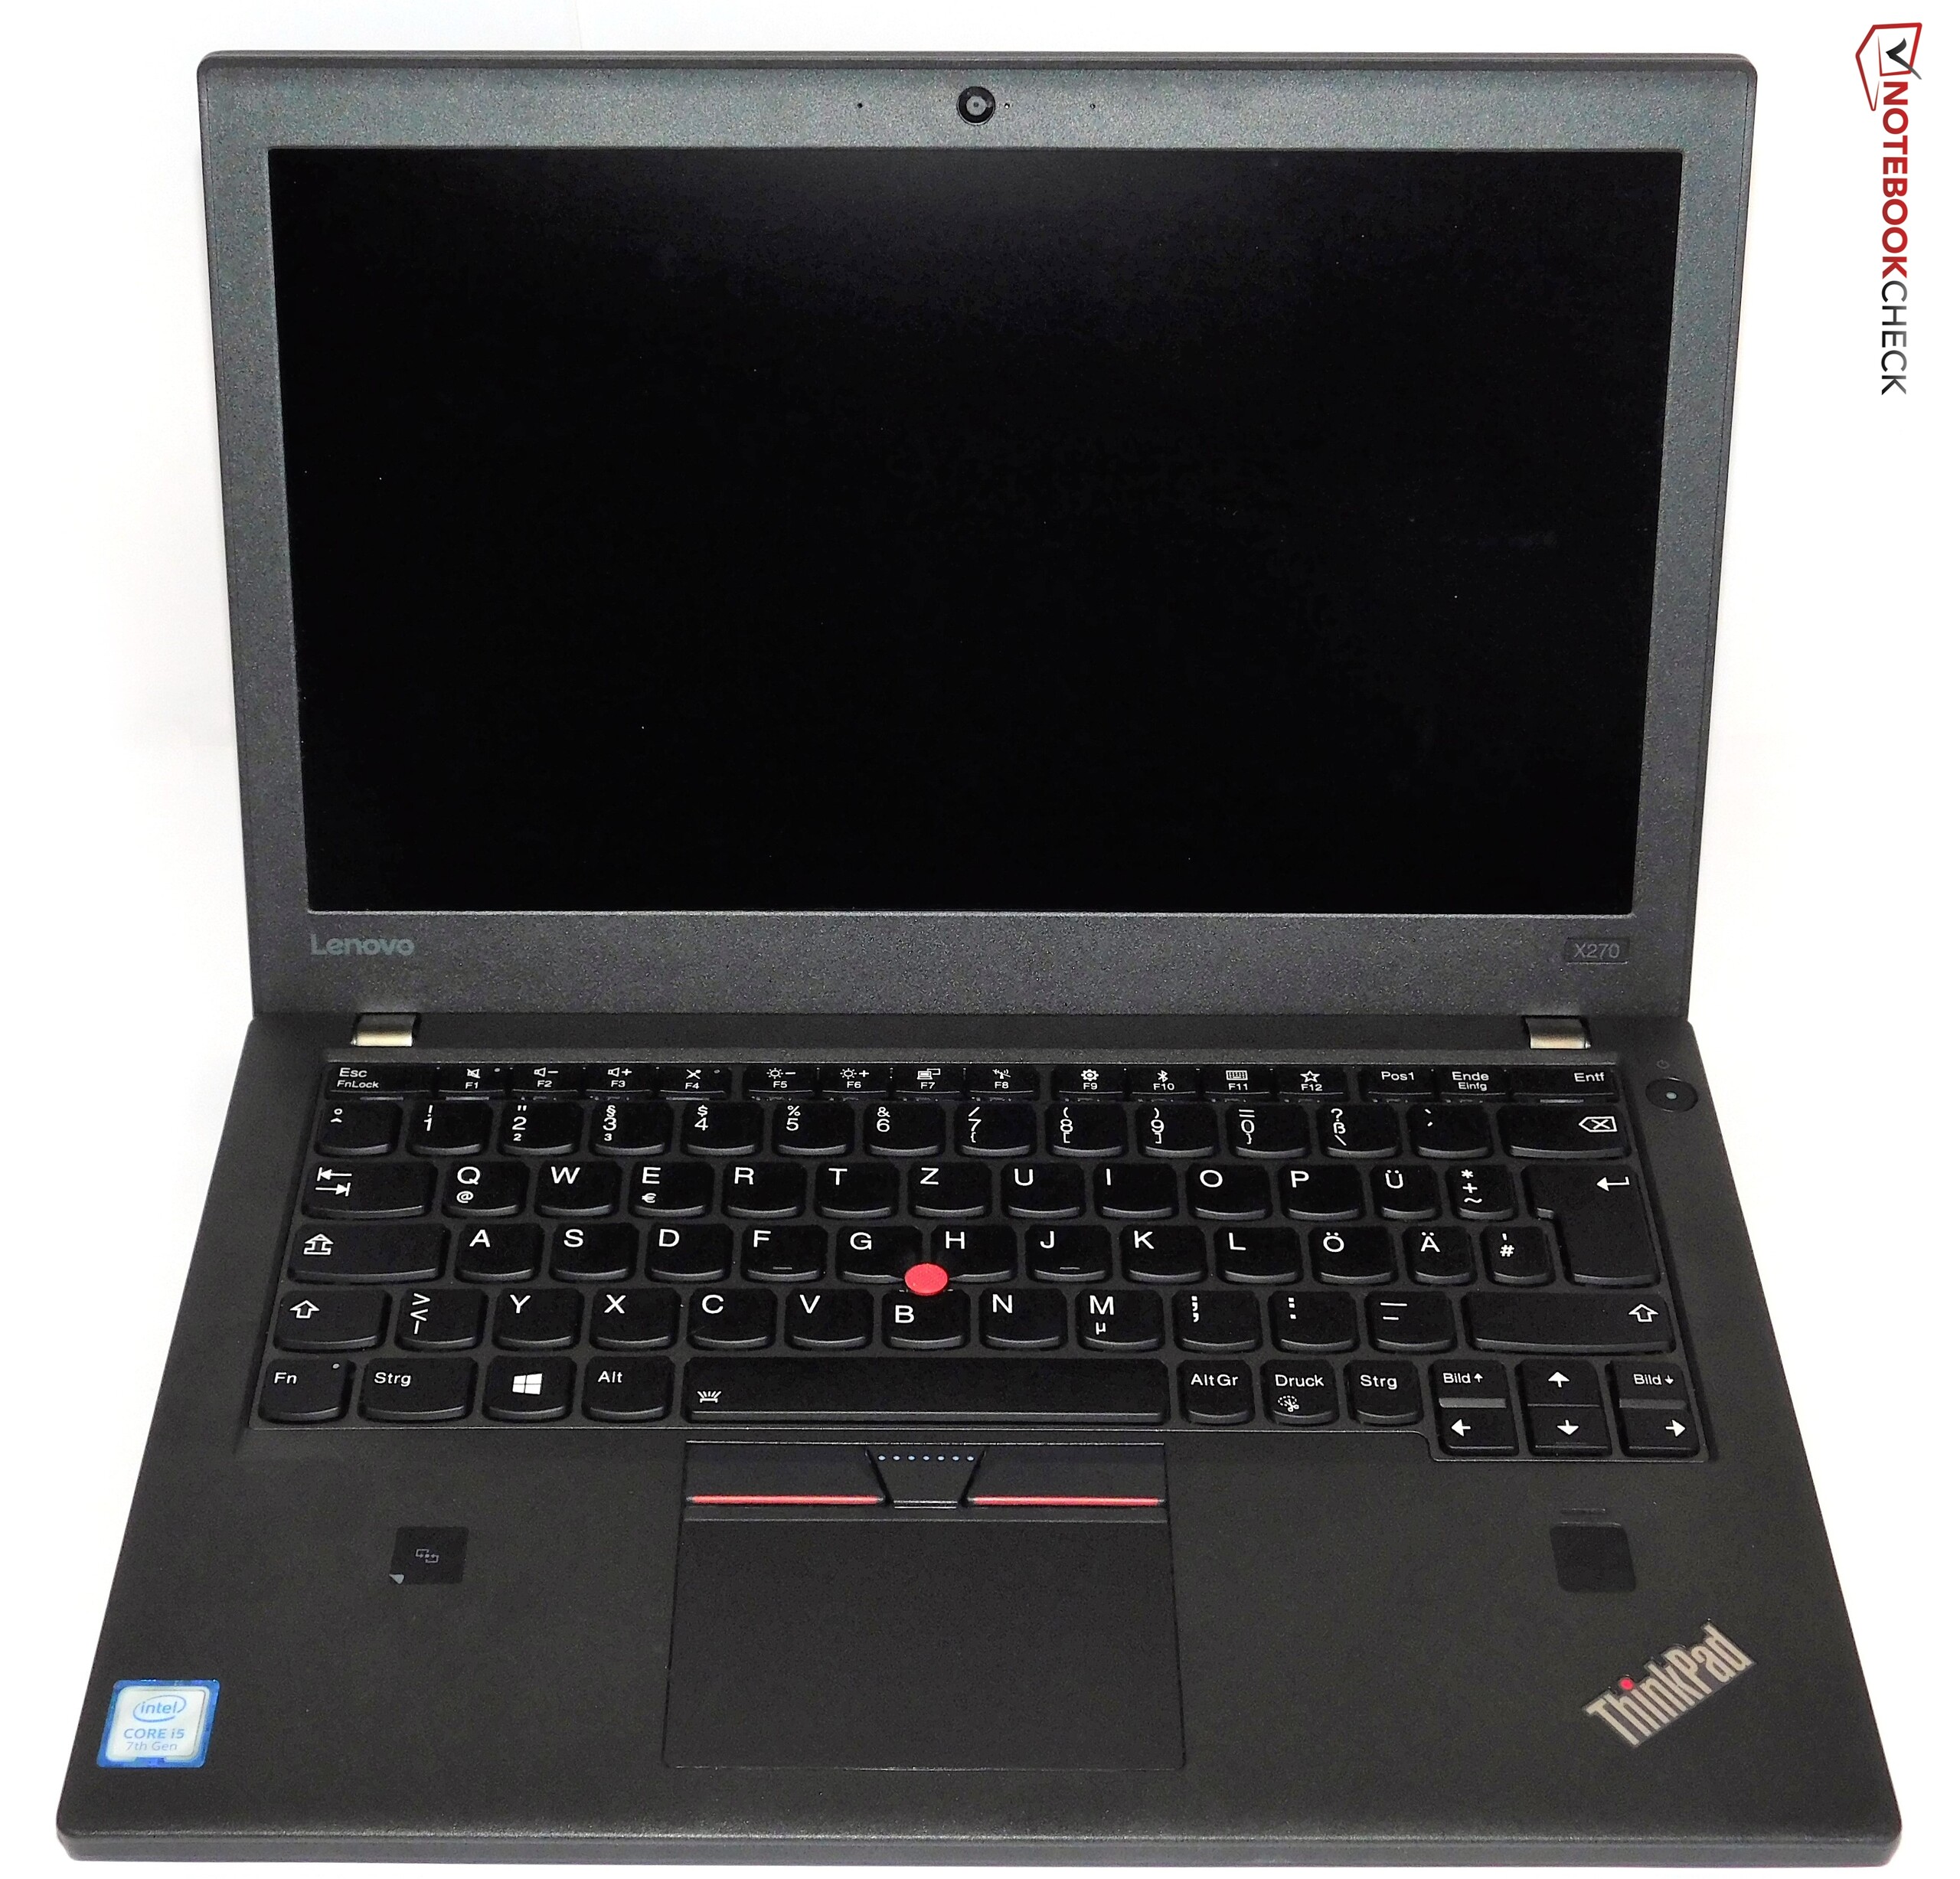 【モバイル】【薄型】 Lenovo ThinkPad X270 第7世代 Core i5 7200U/2.60GHz 8GB HDD250GB Windows10 64bit WPSOffice 12.5インチ HD カメラ 無線LAN パソコン ノートパソコン モバイルノート PC Notebook